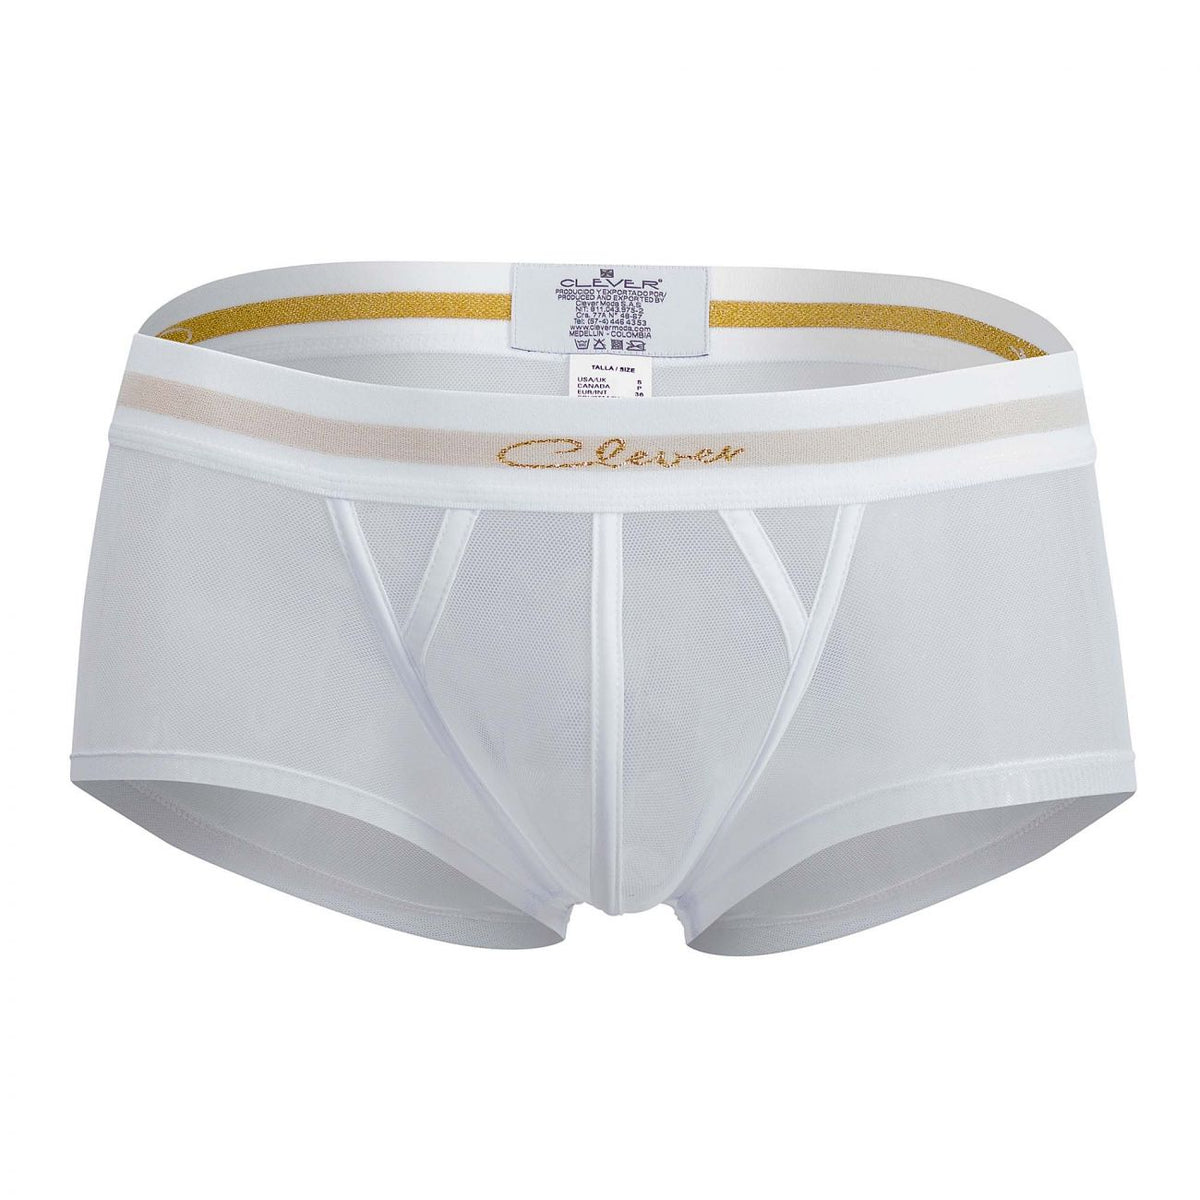 Clever Underwear Myself Latin Trunks | Shop MensUnderwear.io